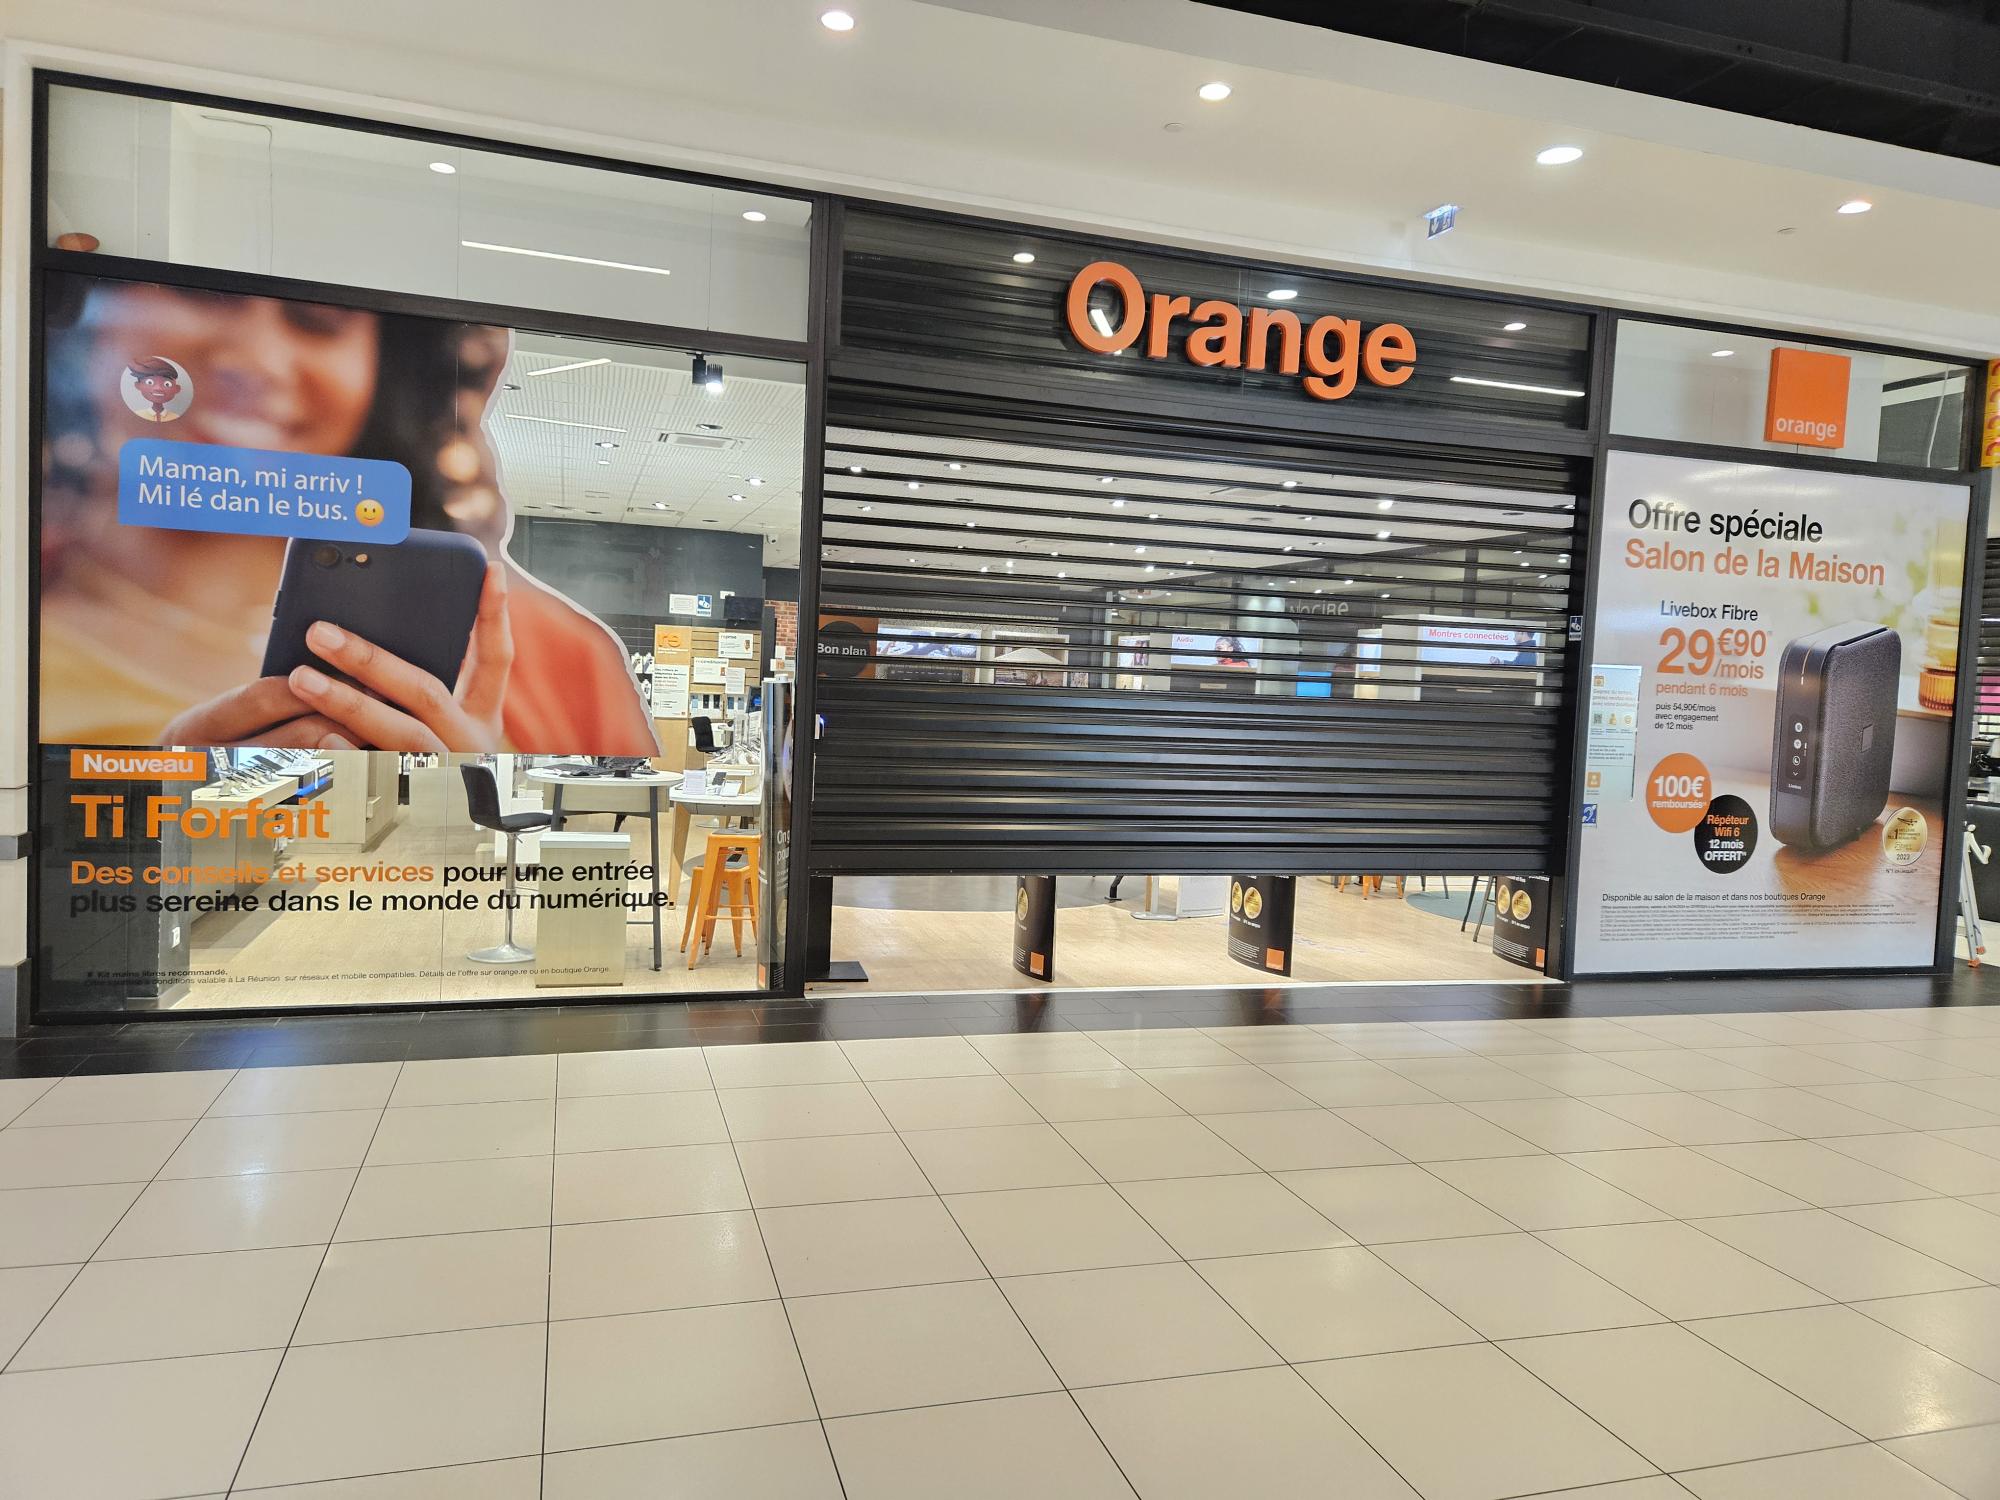  Orange Réunion lance le Ti Forfait mobile avec un accompagnement gratuit pour les parents